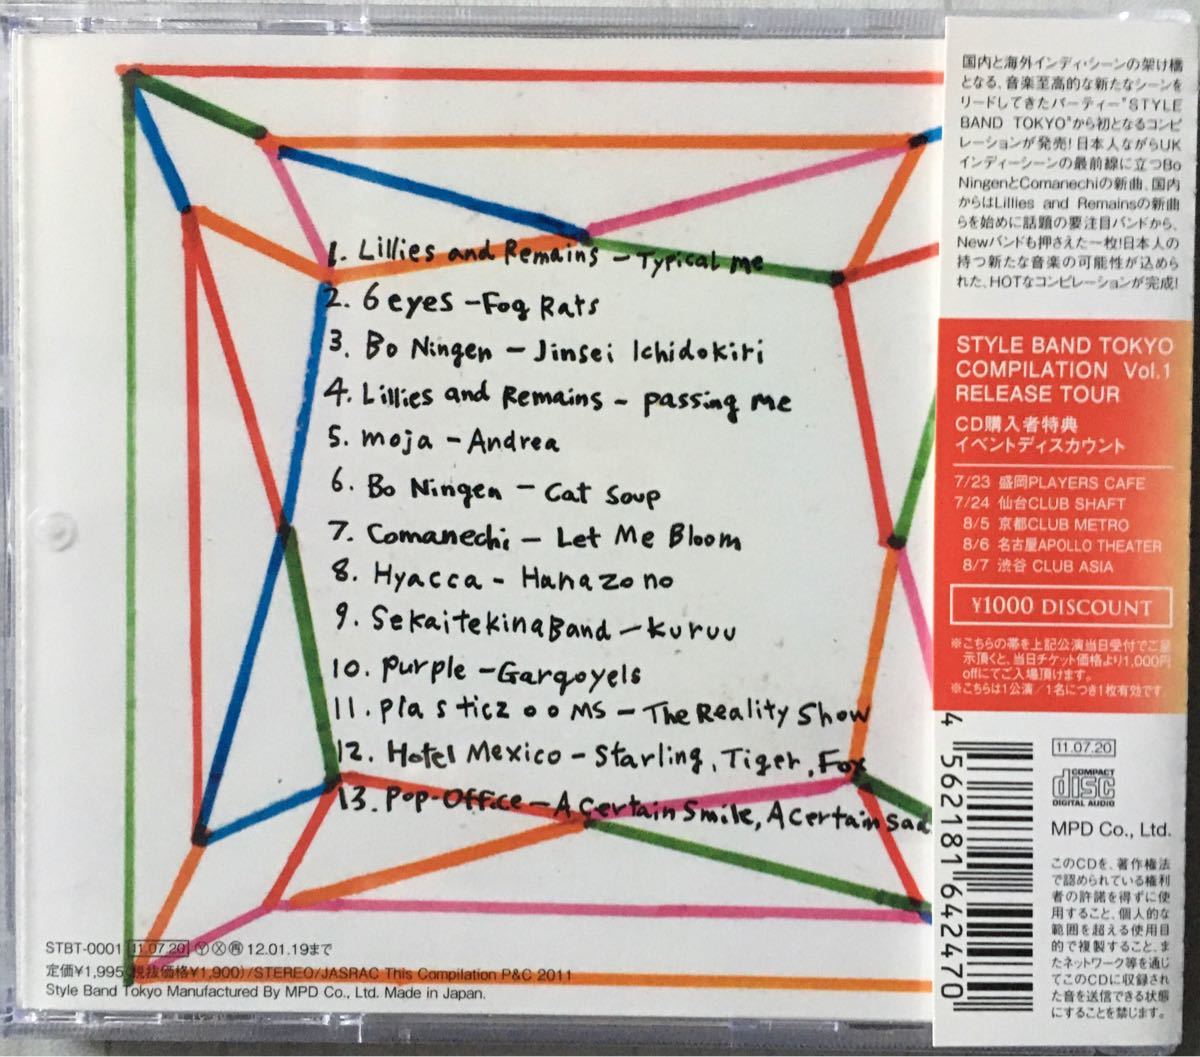 ◆コンピレーションアルバムCD◆V.A 「STYLE BAND TOKYO Compilation Vol.1」※帯付き